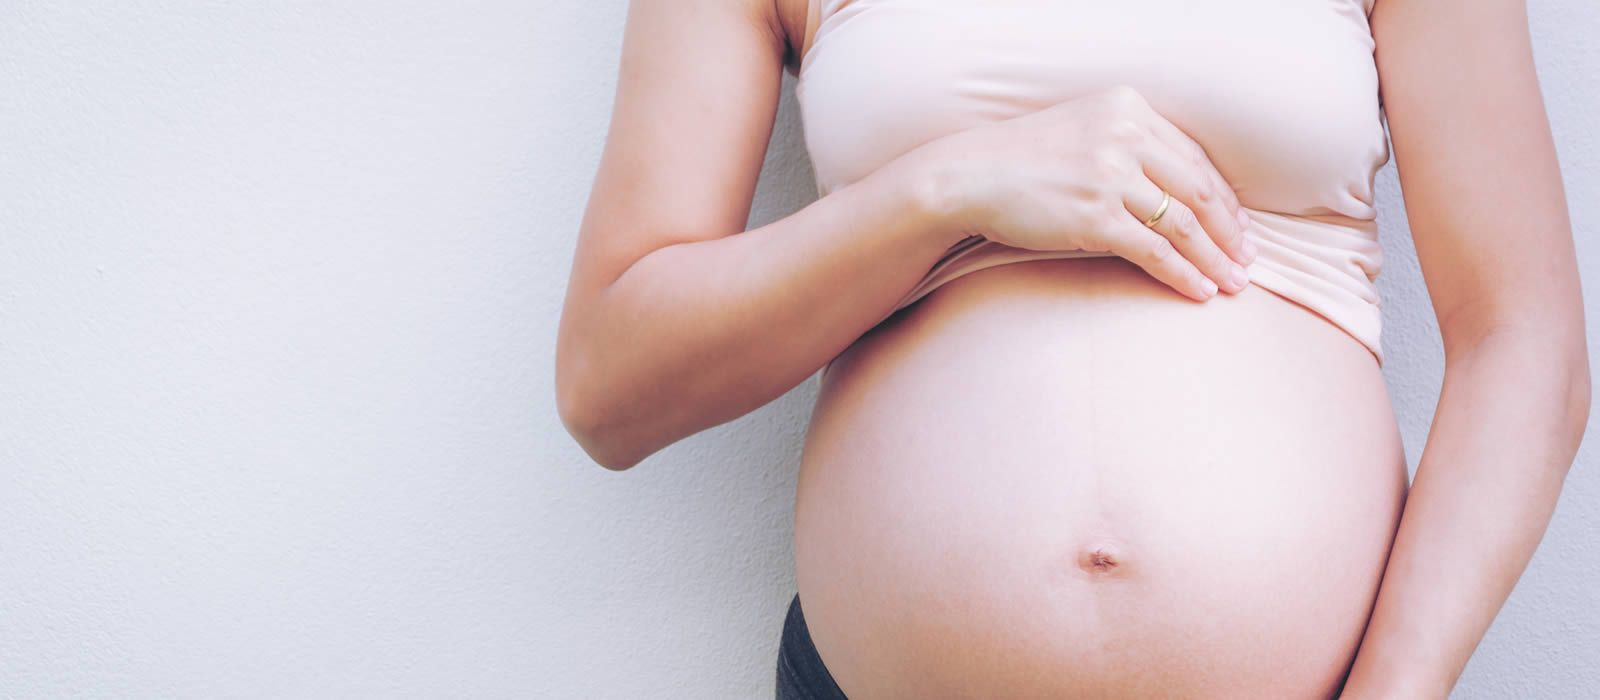 Flujo vaginal en el embarazo ¿qué reflejan esos cambios?